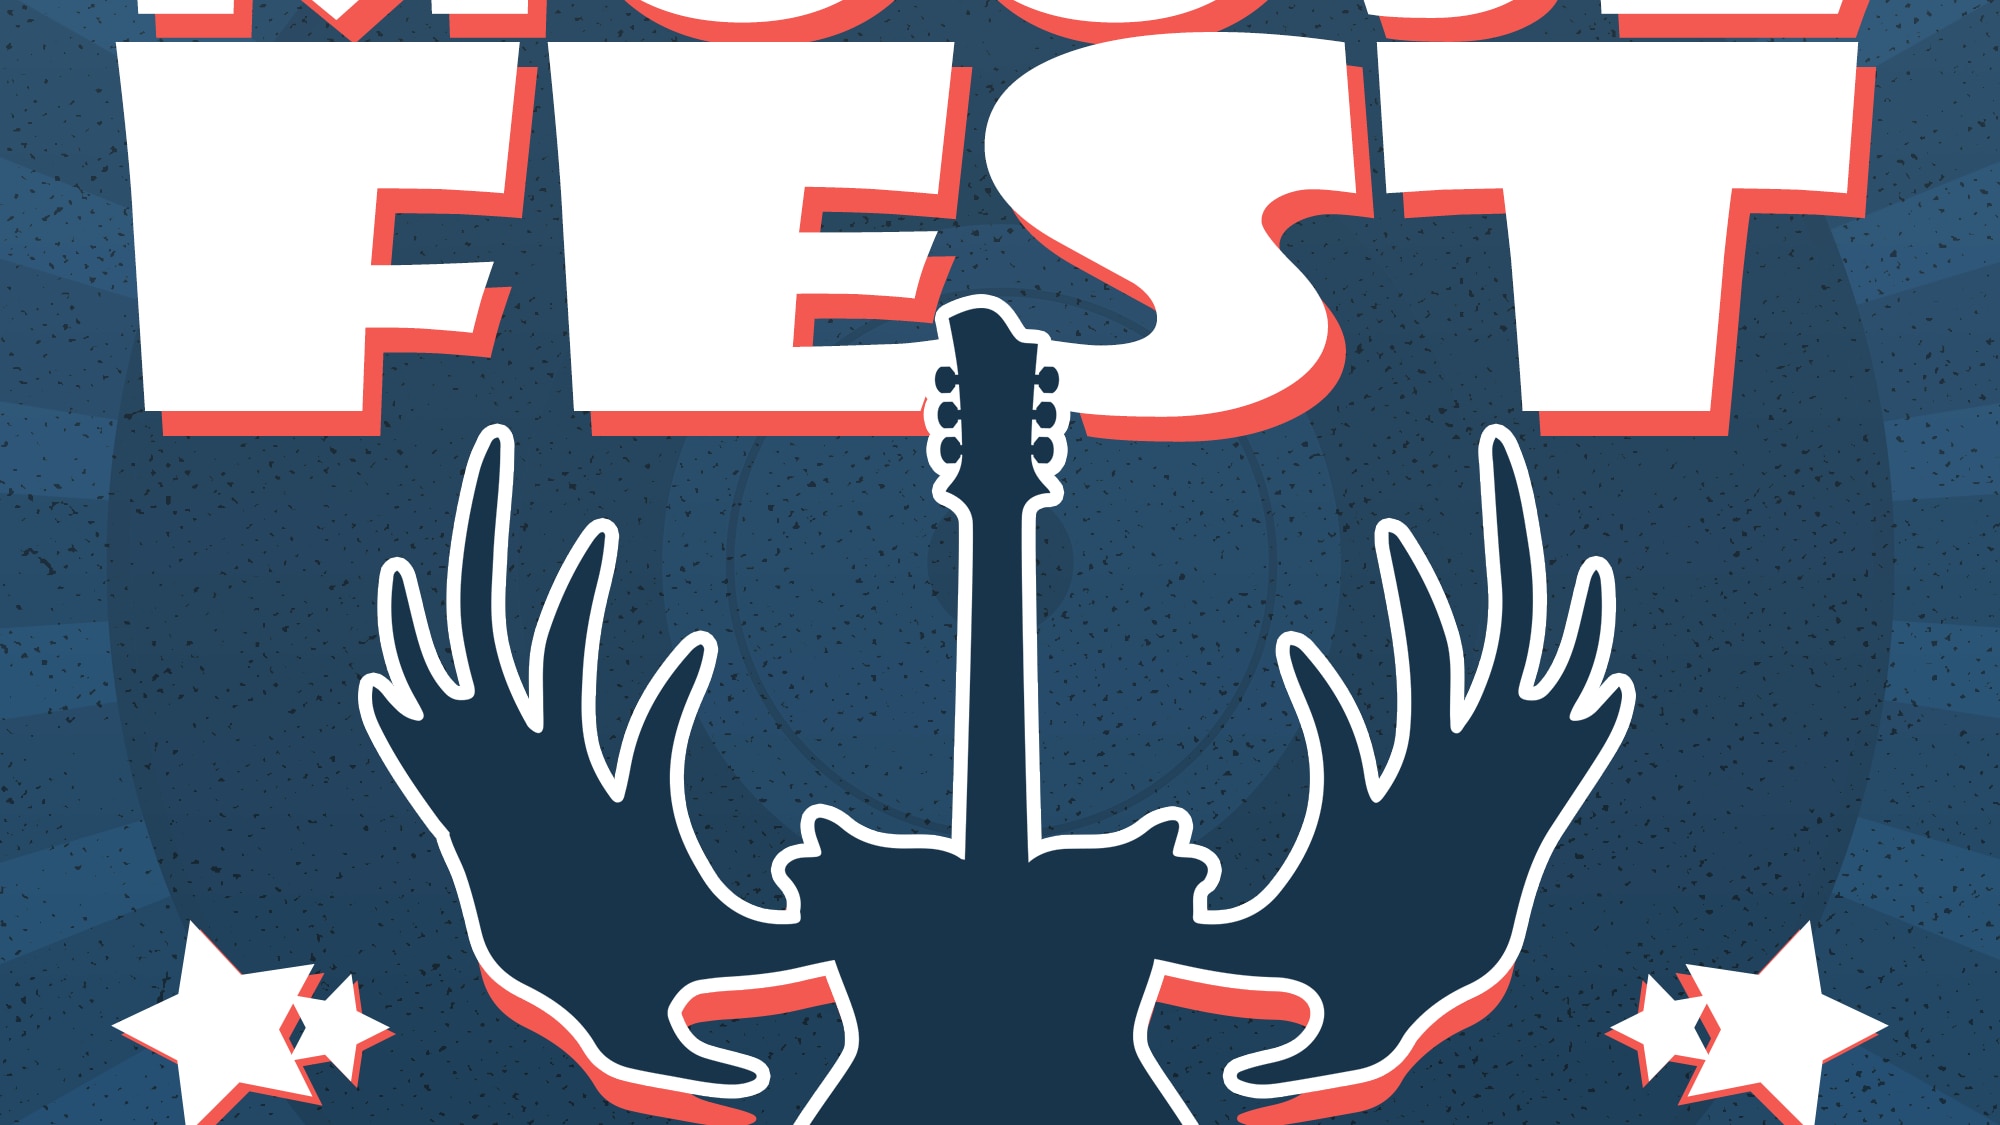 MooseFest  :  Un festival de musique à Bellevue
MooseFest  :  Un festival de musique à Bellevue